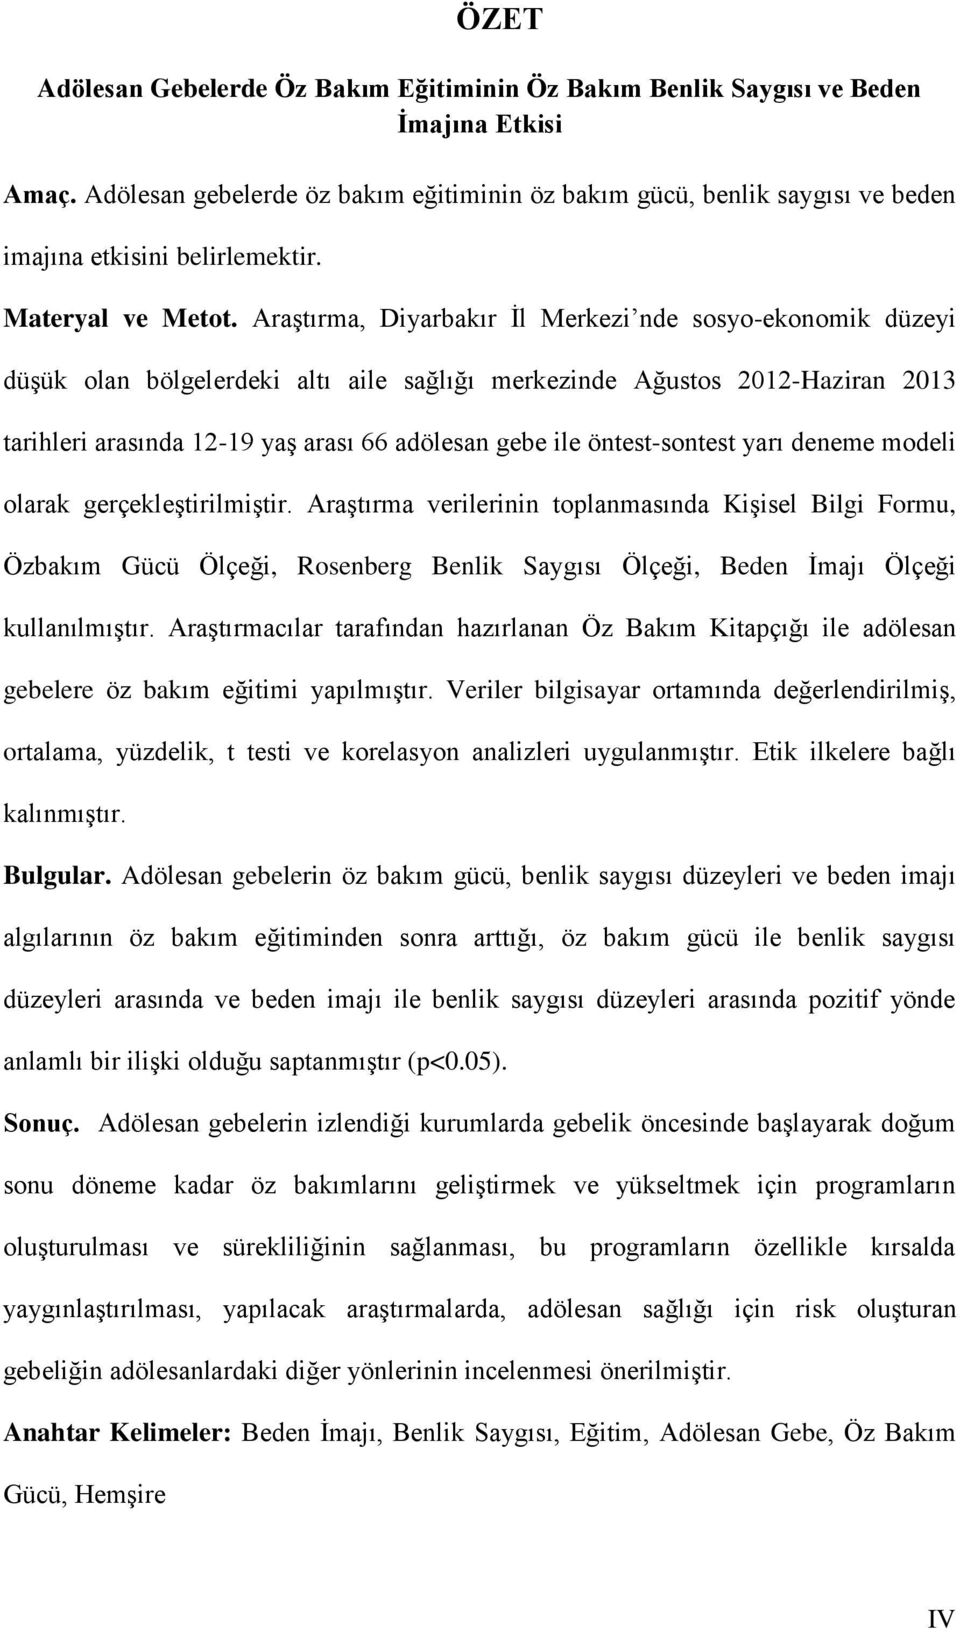 AraĢtırma, Diyarbakır Ġl Merkezi nde sosyo-ekonomik düzeyi düģük olan bölgelerdeki altı aile sağlığı merkezinde Ağustos 2012-Haziran 2013 tarihleri arasında 12-19 yaģ arası 66 adölesan gebe ile